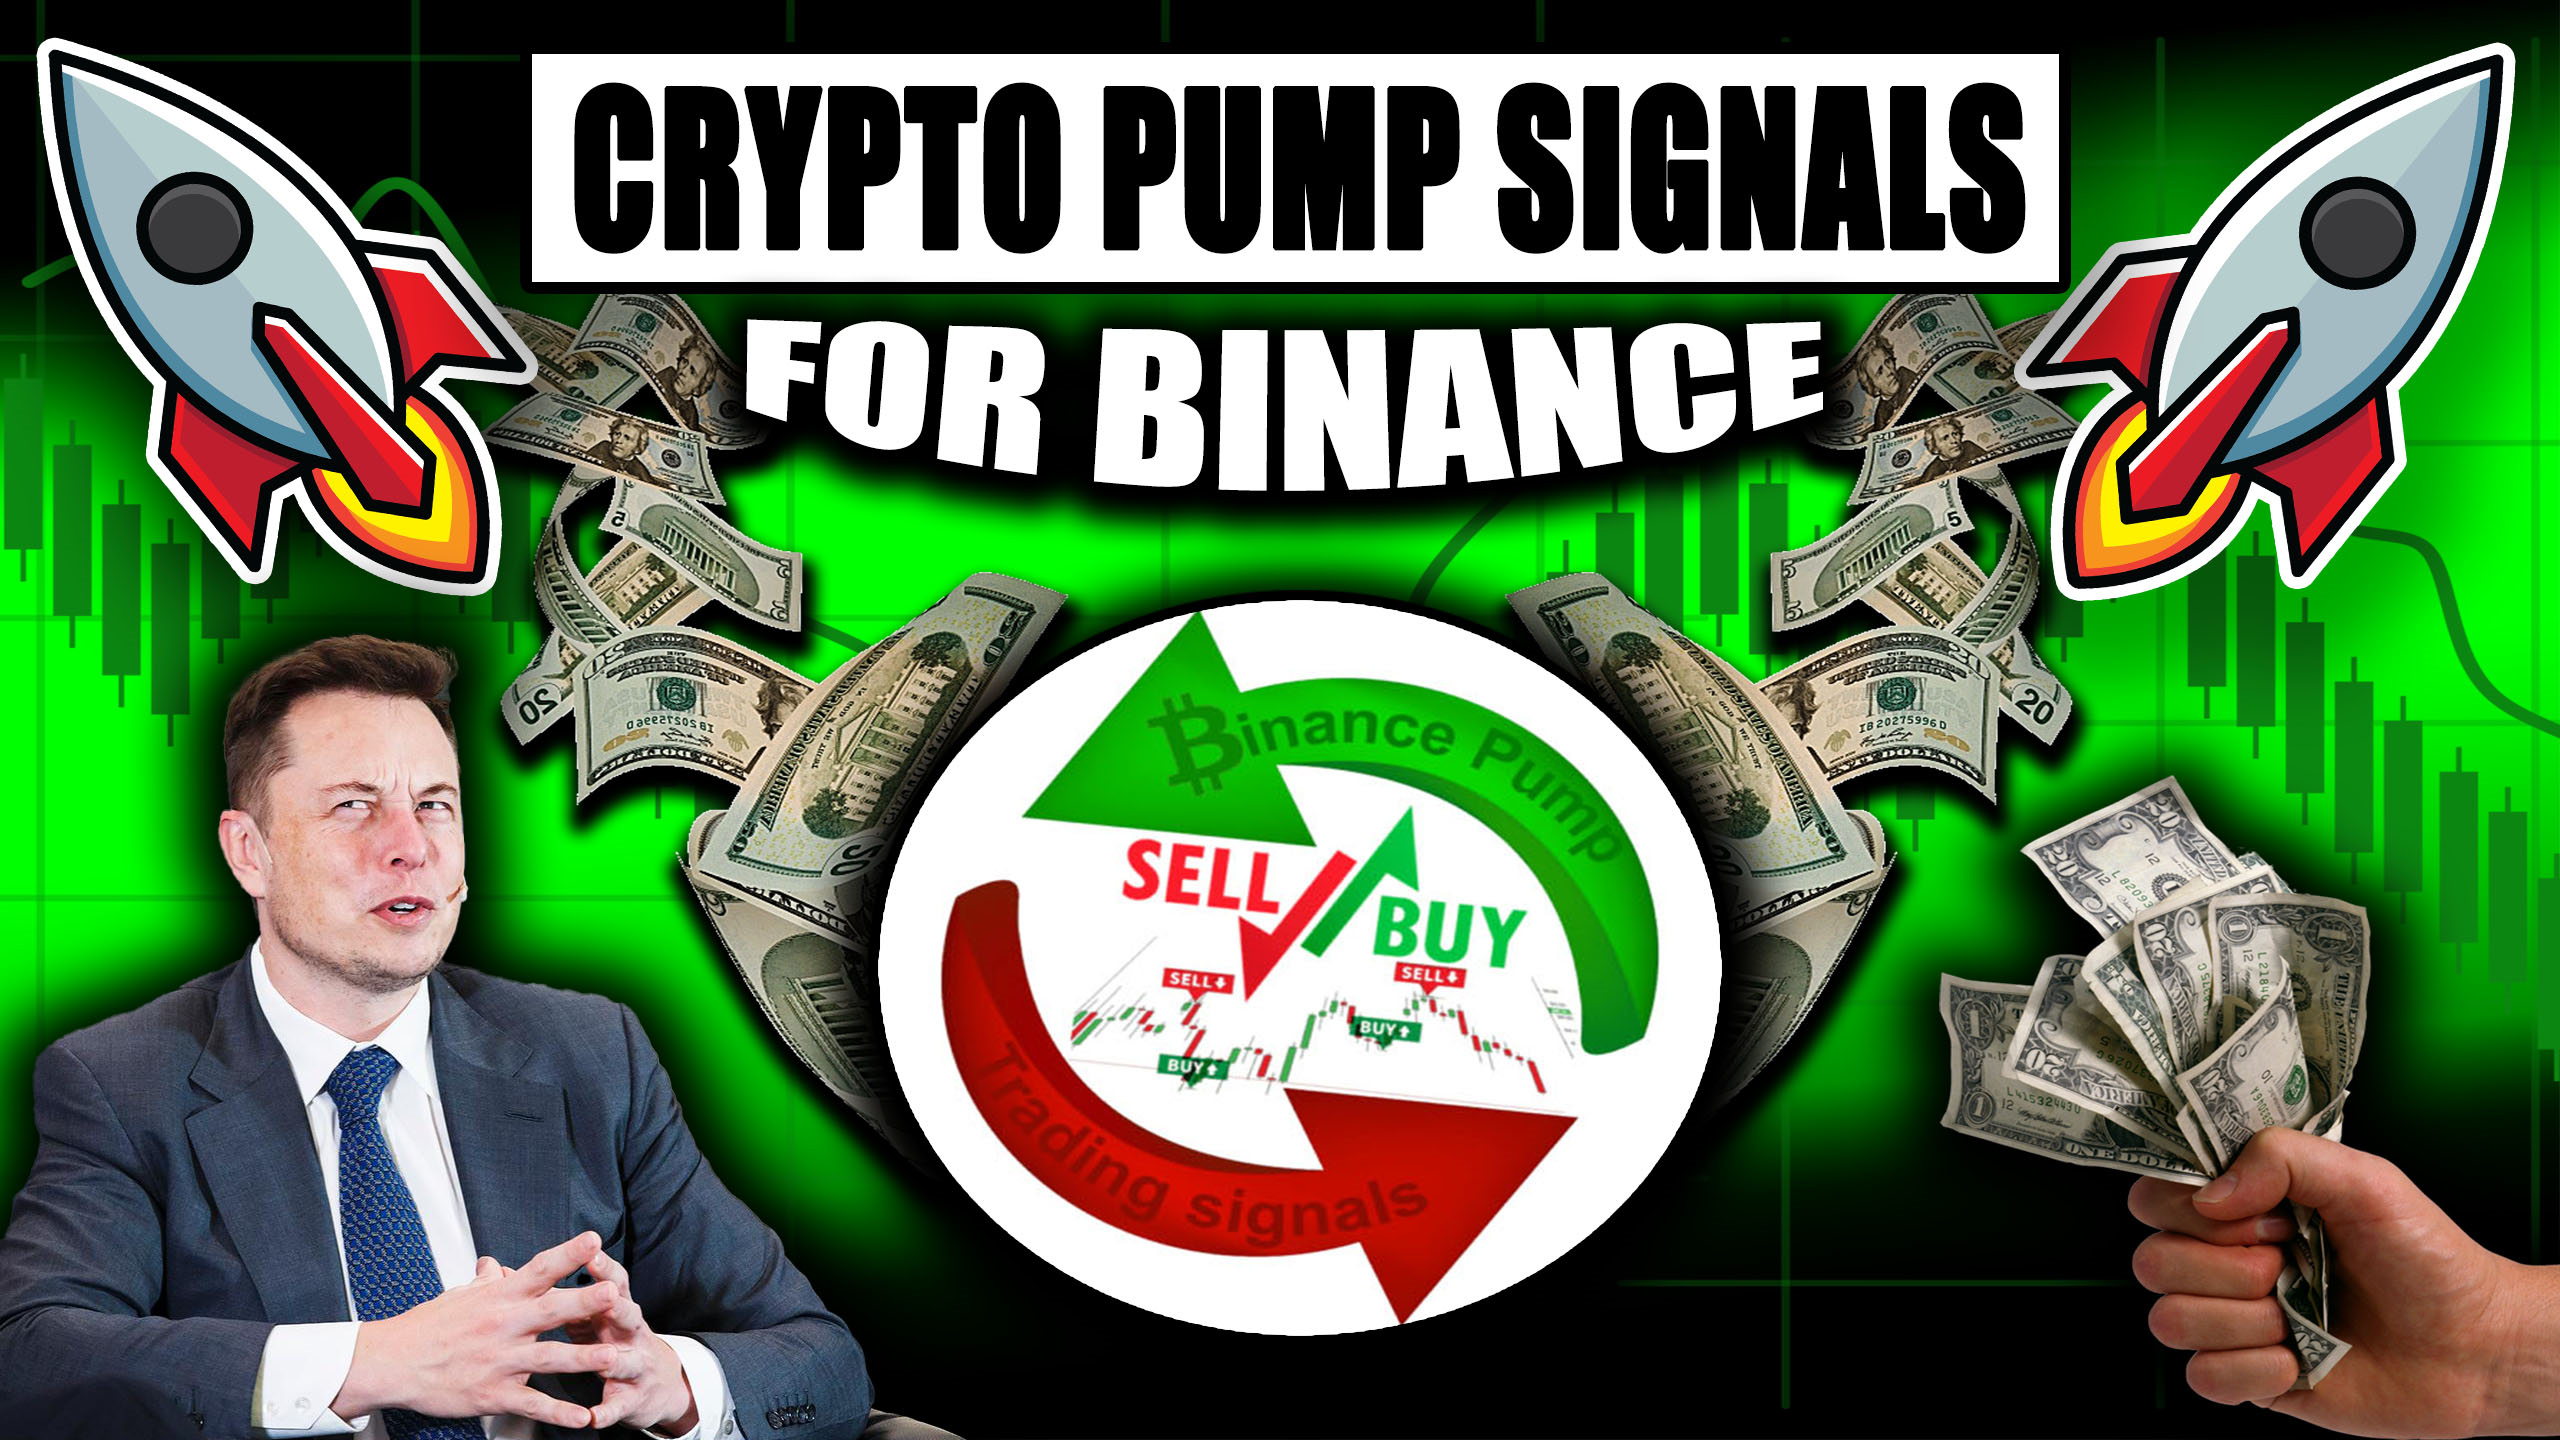 kripto pompası sinyalleri banner'ı - Yapay Zeka Destekli ile Karınızı En Üst Düzeye Çıkarın Crypto Pump Signals for Binance 4